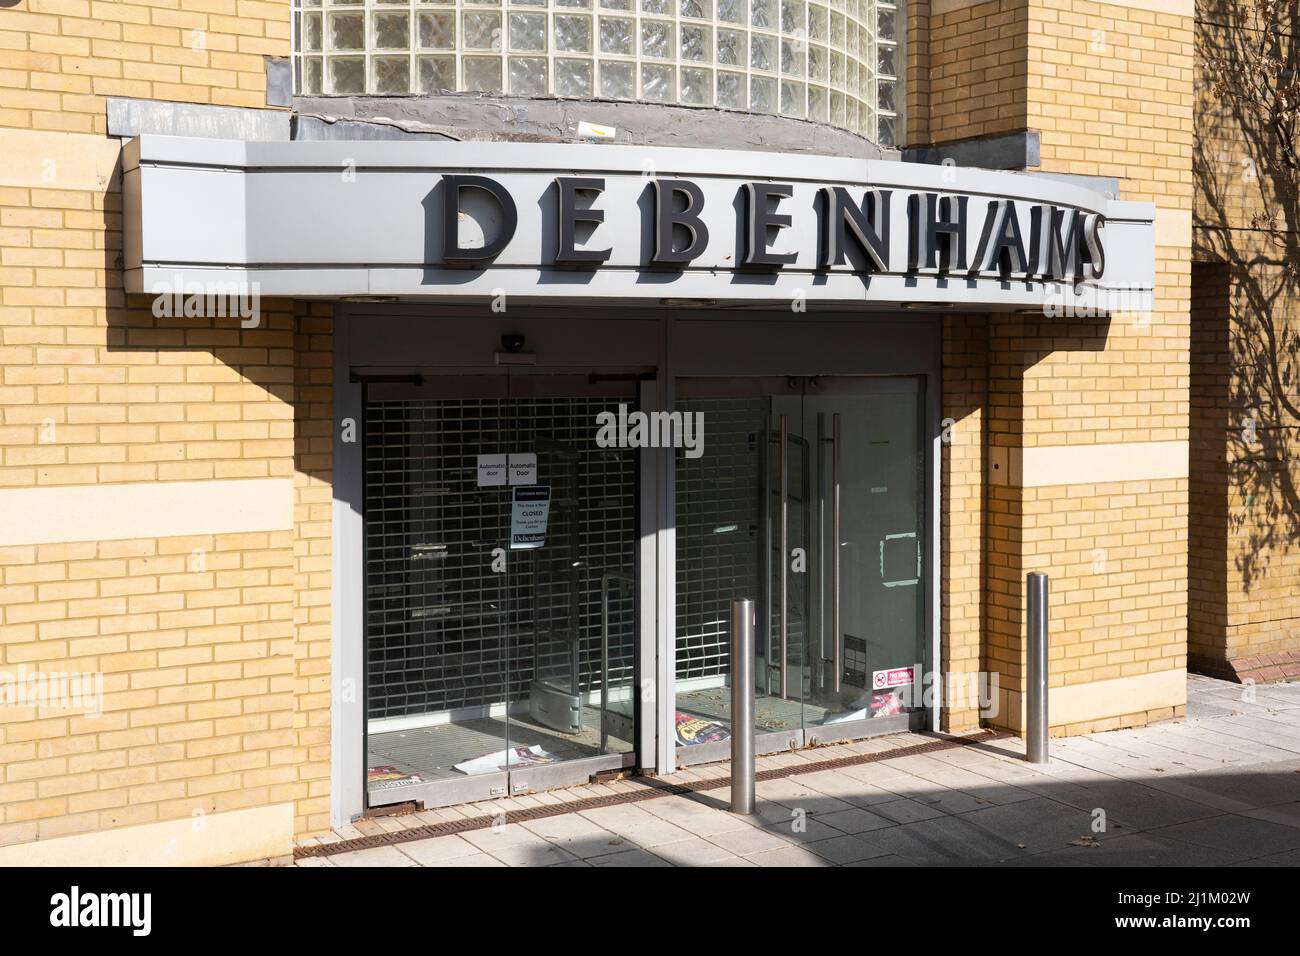 Quasi il 90% degli ex negozi Debenhams rimane vuoto quasi un anno dopo la chiusura del grande magazzino ed è entrato in amministrazione. Basingstoke, Regno Unito Foto Stock